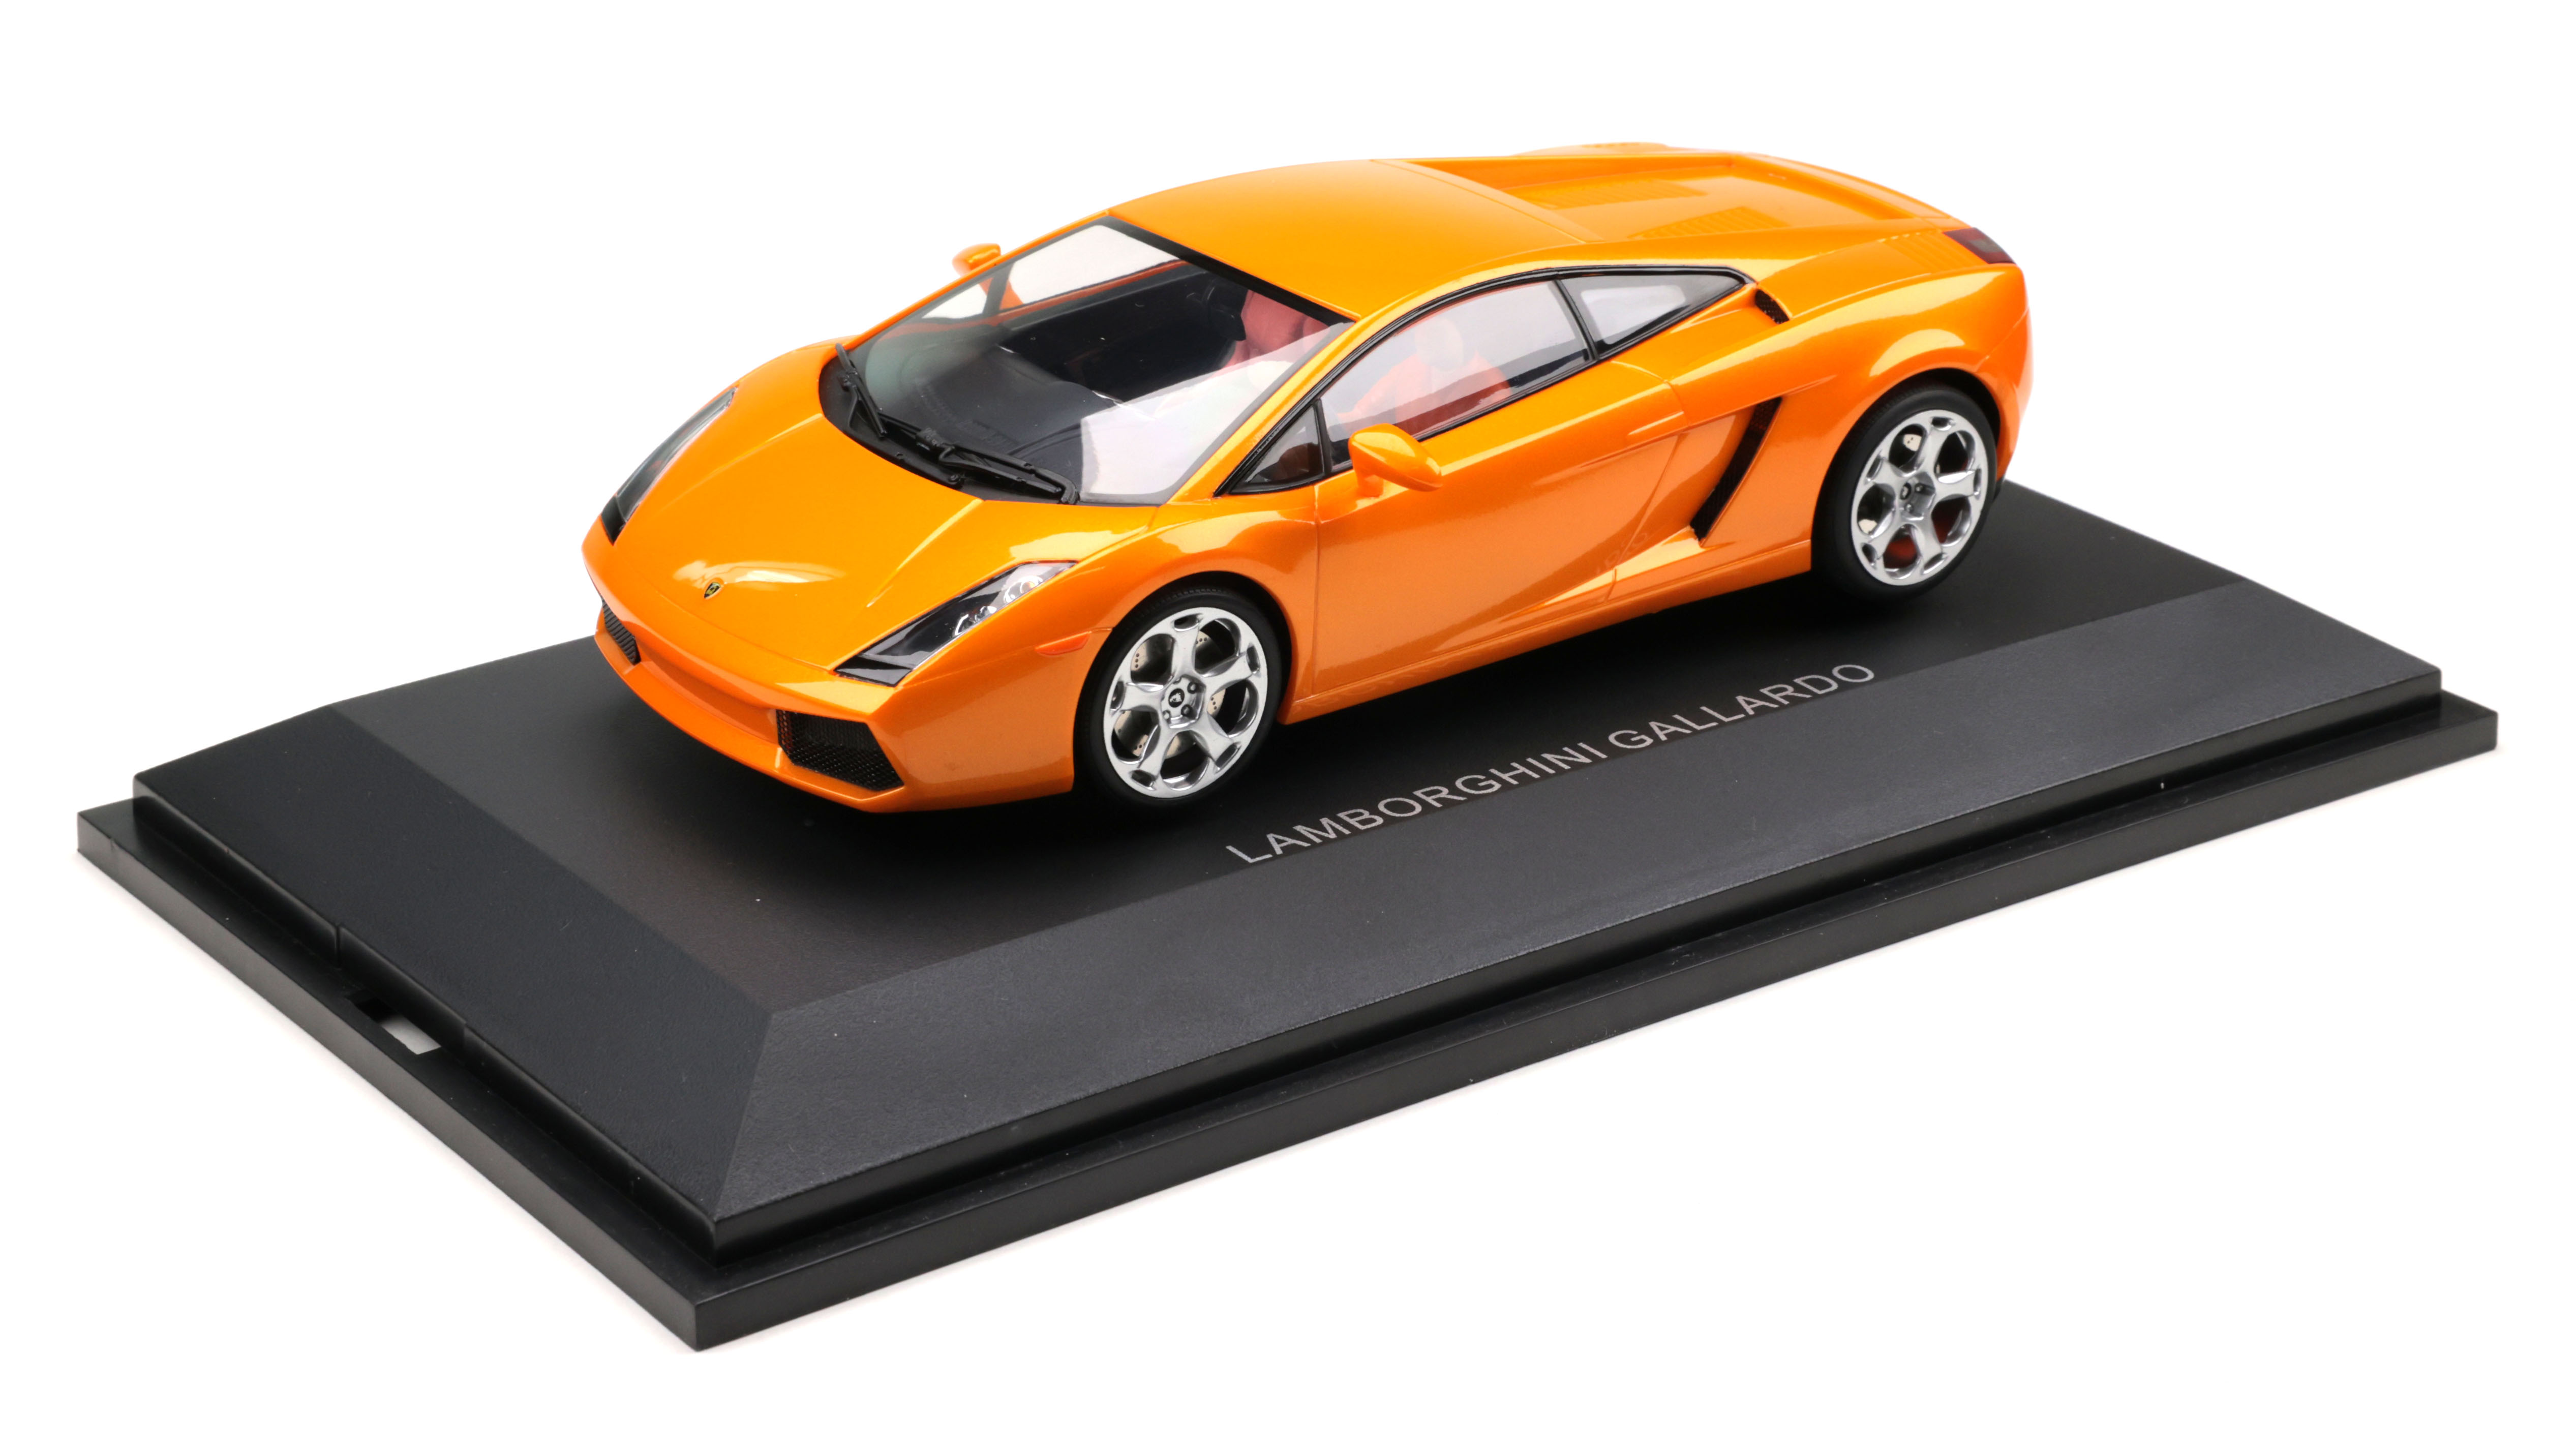 AutoArt SLOT Car 1:24 Lamborghini GALLARDO Orange AWD Lighting Lamps NEW 14032 